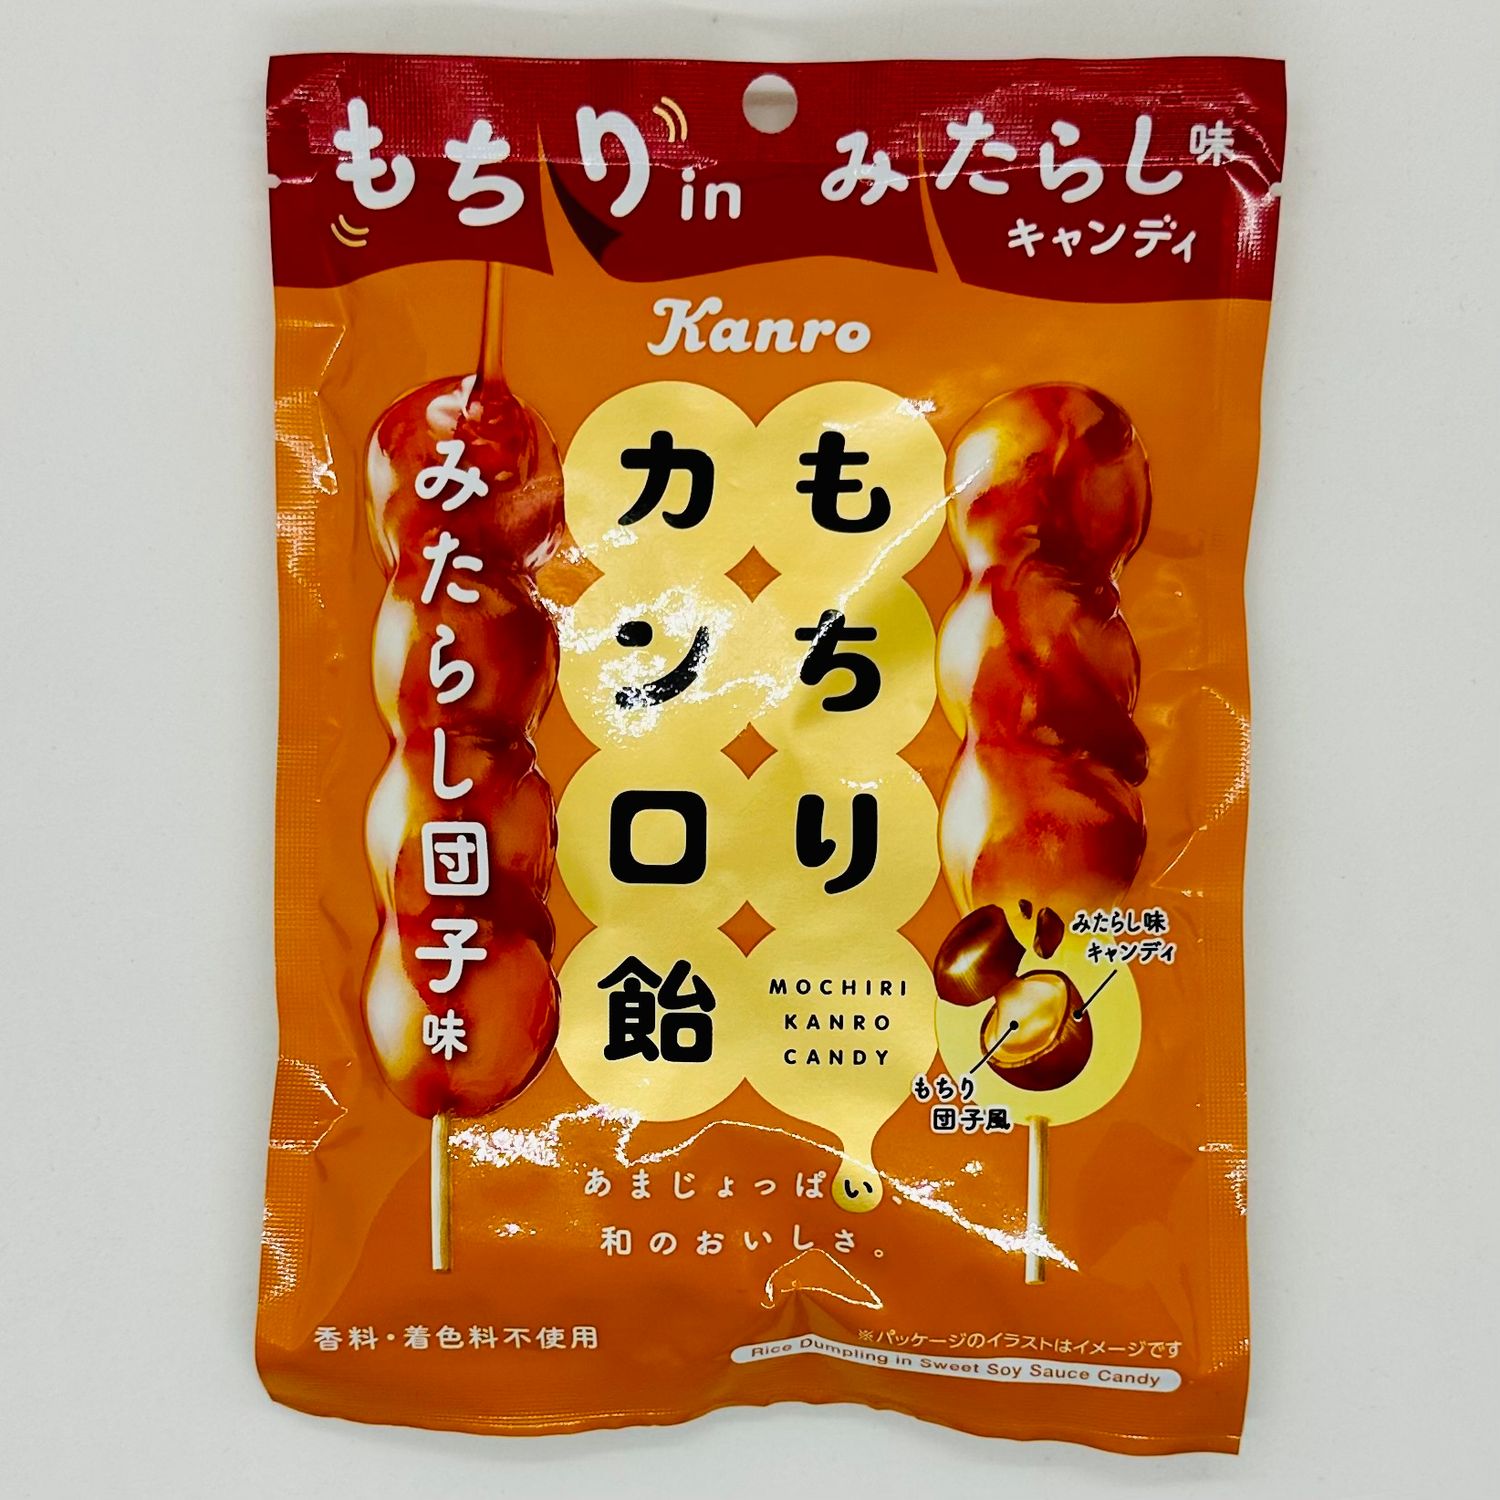 Kanro Mochiri Candy